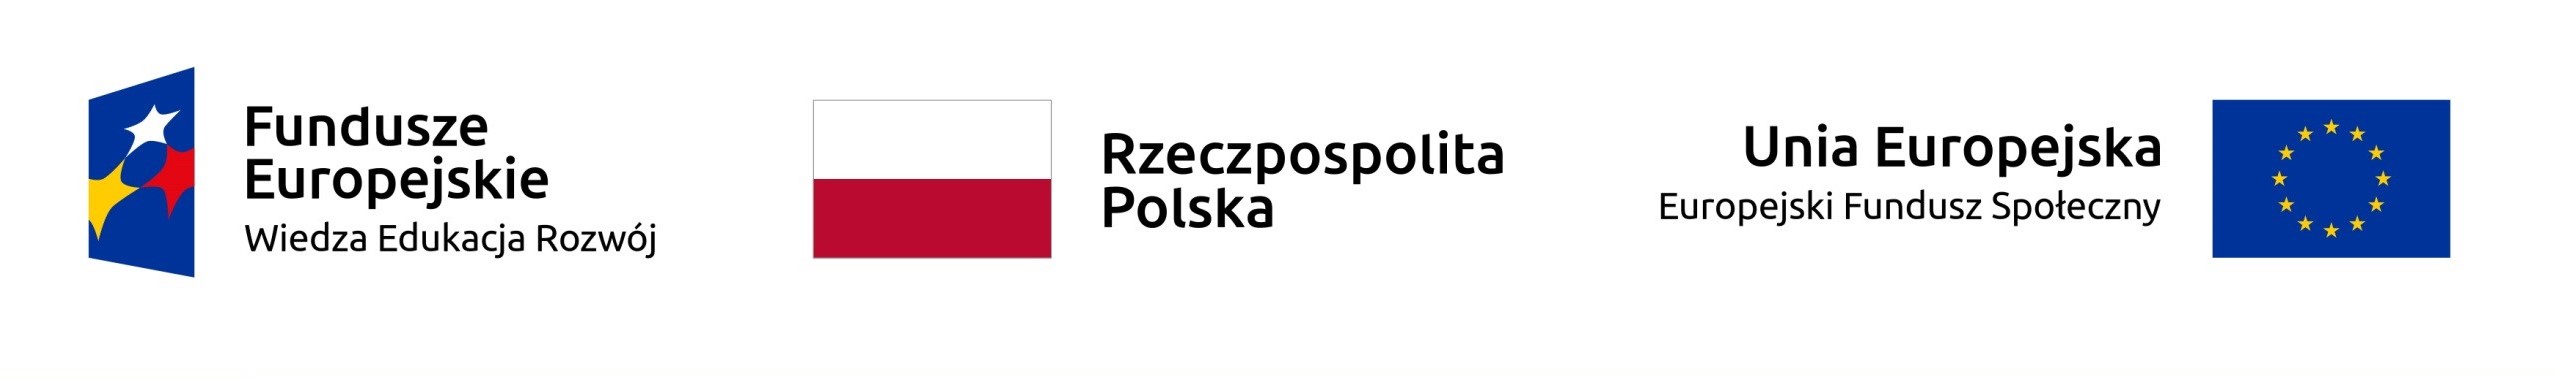 Logo: Fundusze Europejskie, Rzeczpospolita Polska, Unia Europejska.